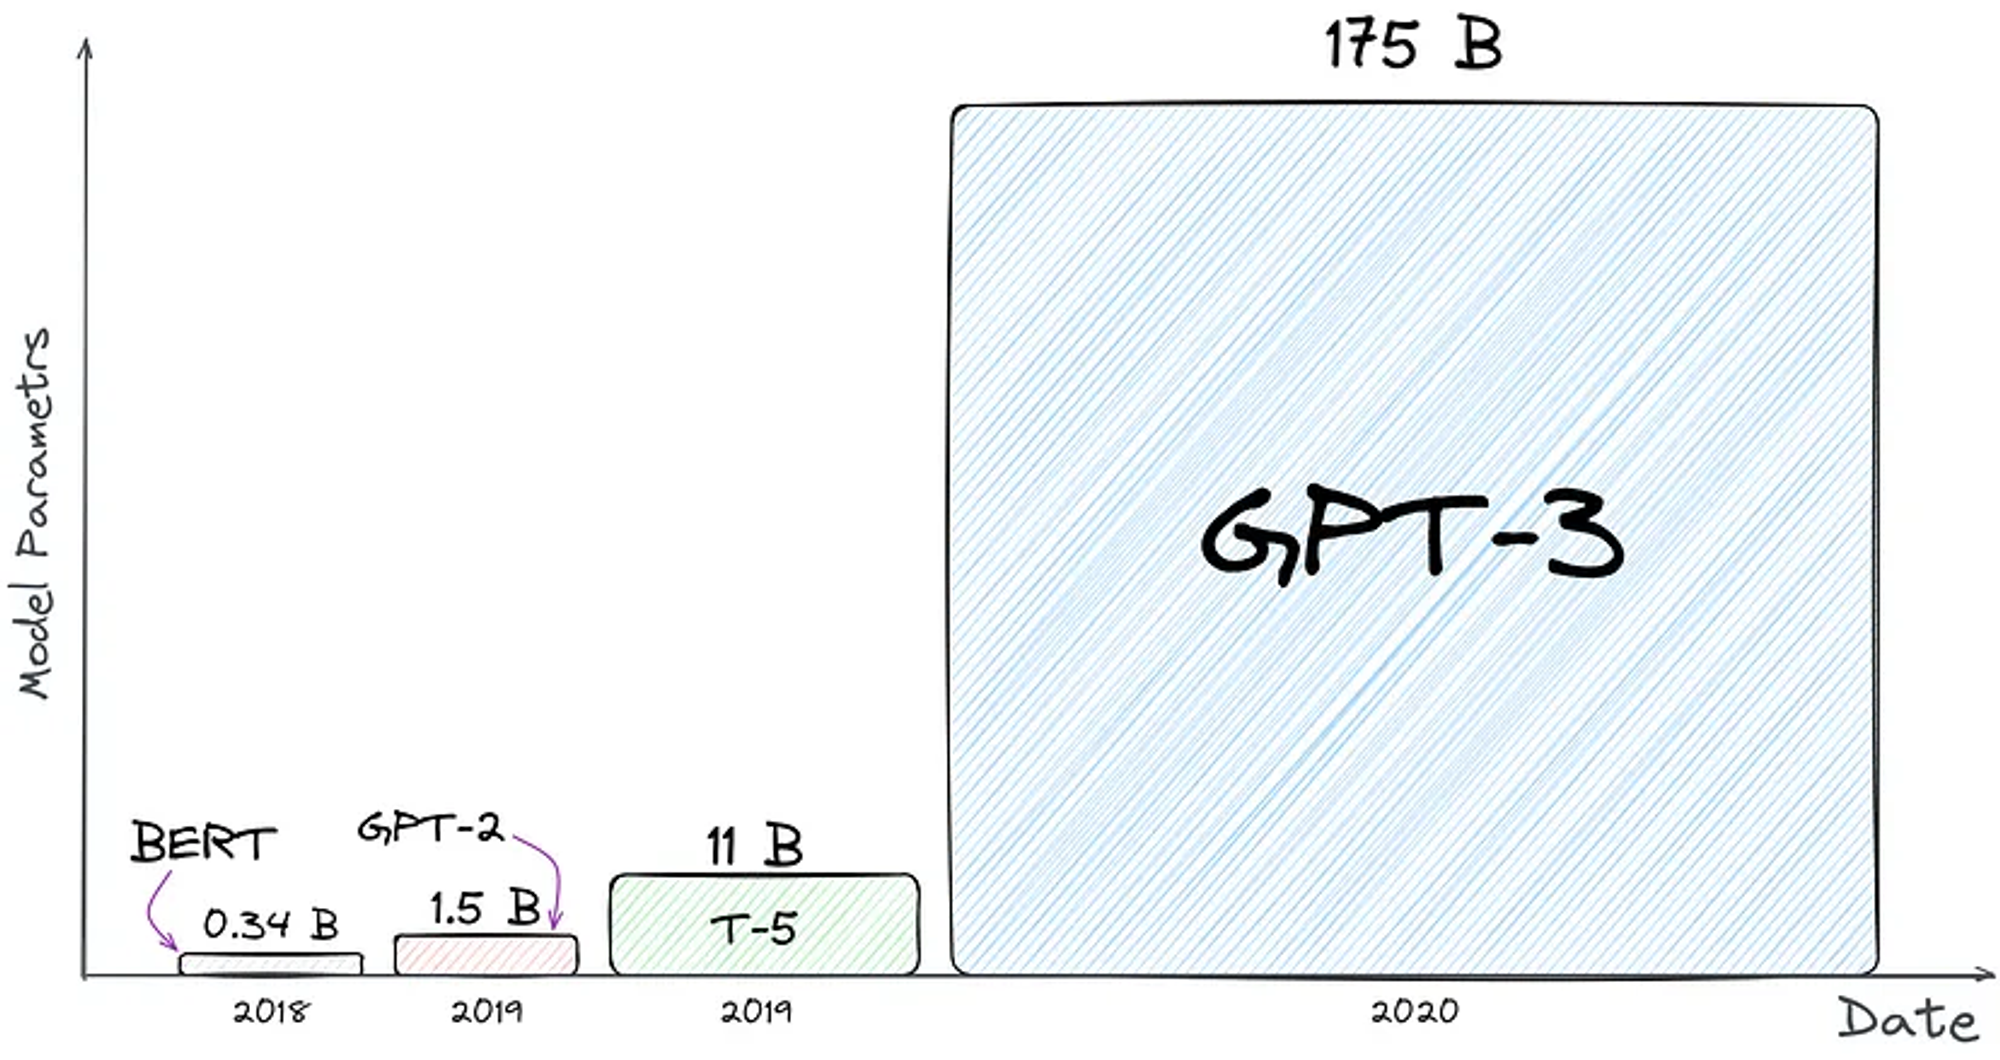  Сравнение количества параметров моделей. Просто посмотрите, насколько большая GPT-3. Про GPT-4 пока что информации нет.   